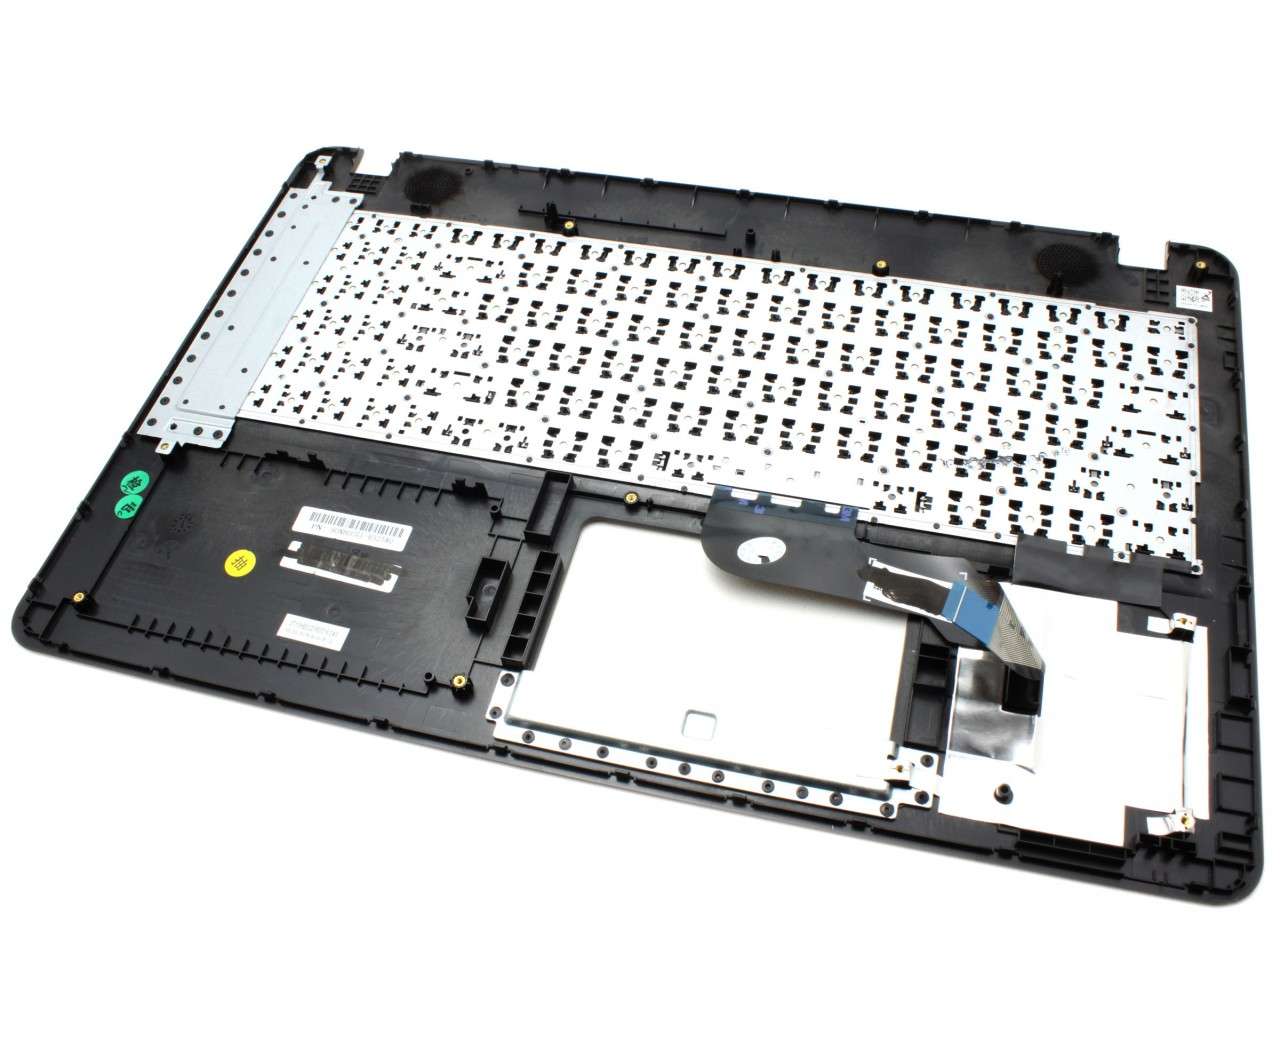 Tastatura Asus X541NC Neagra cu Palmrest Auriu